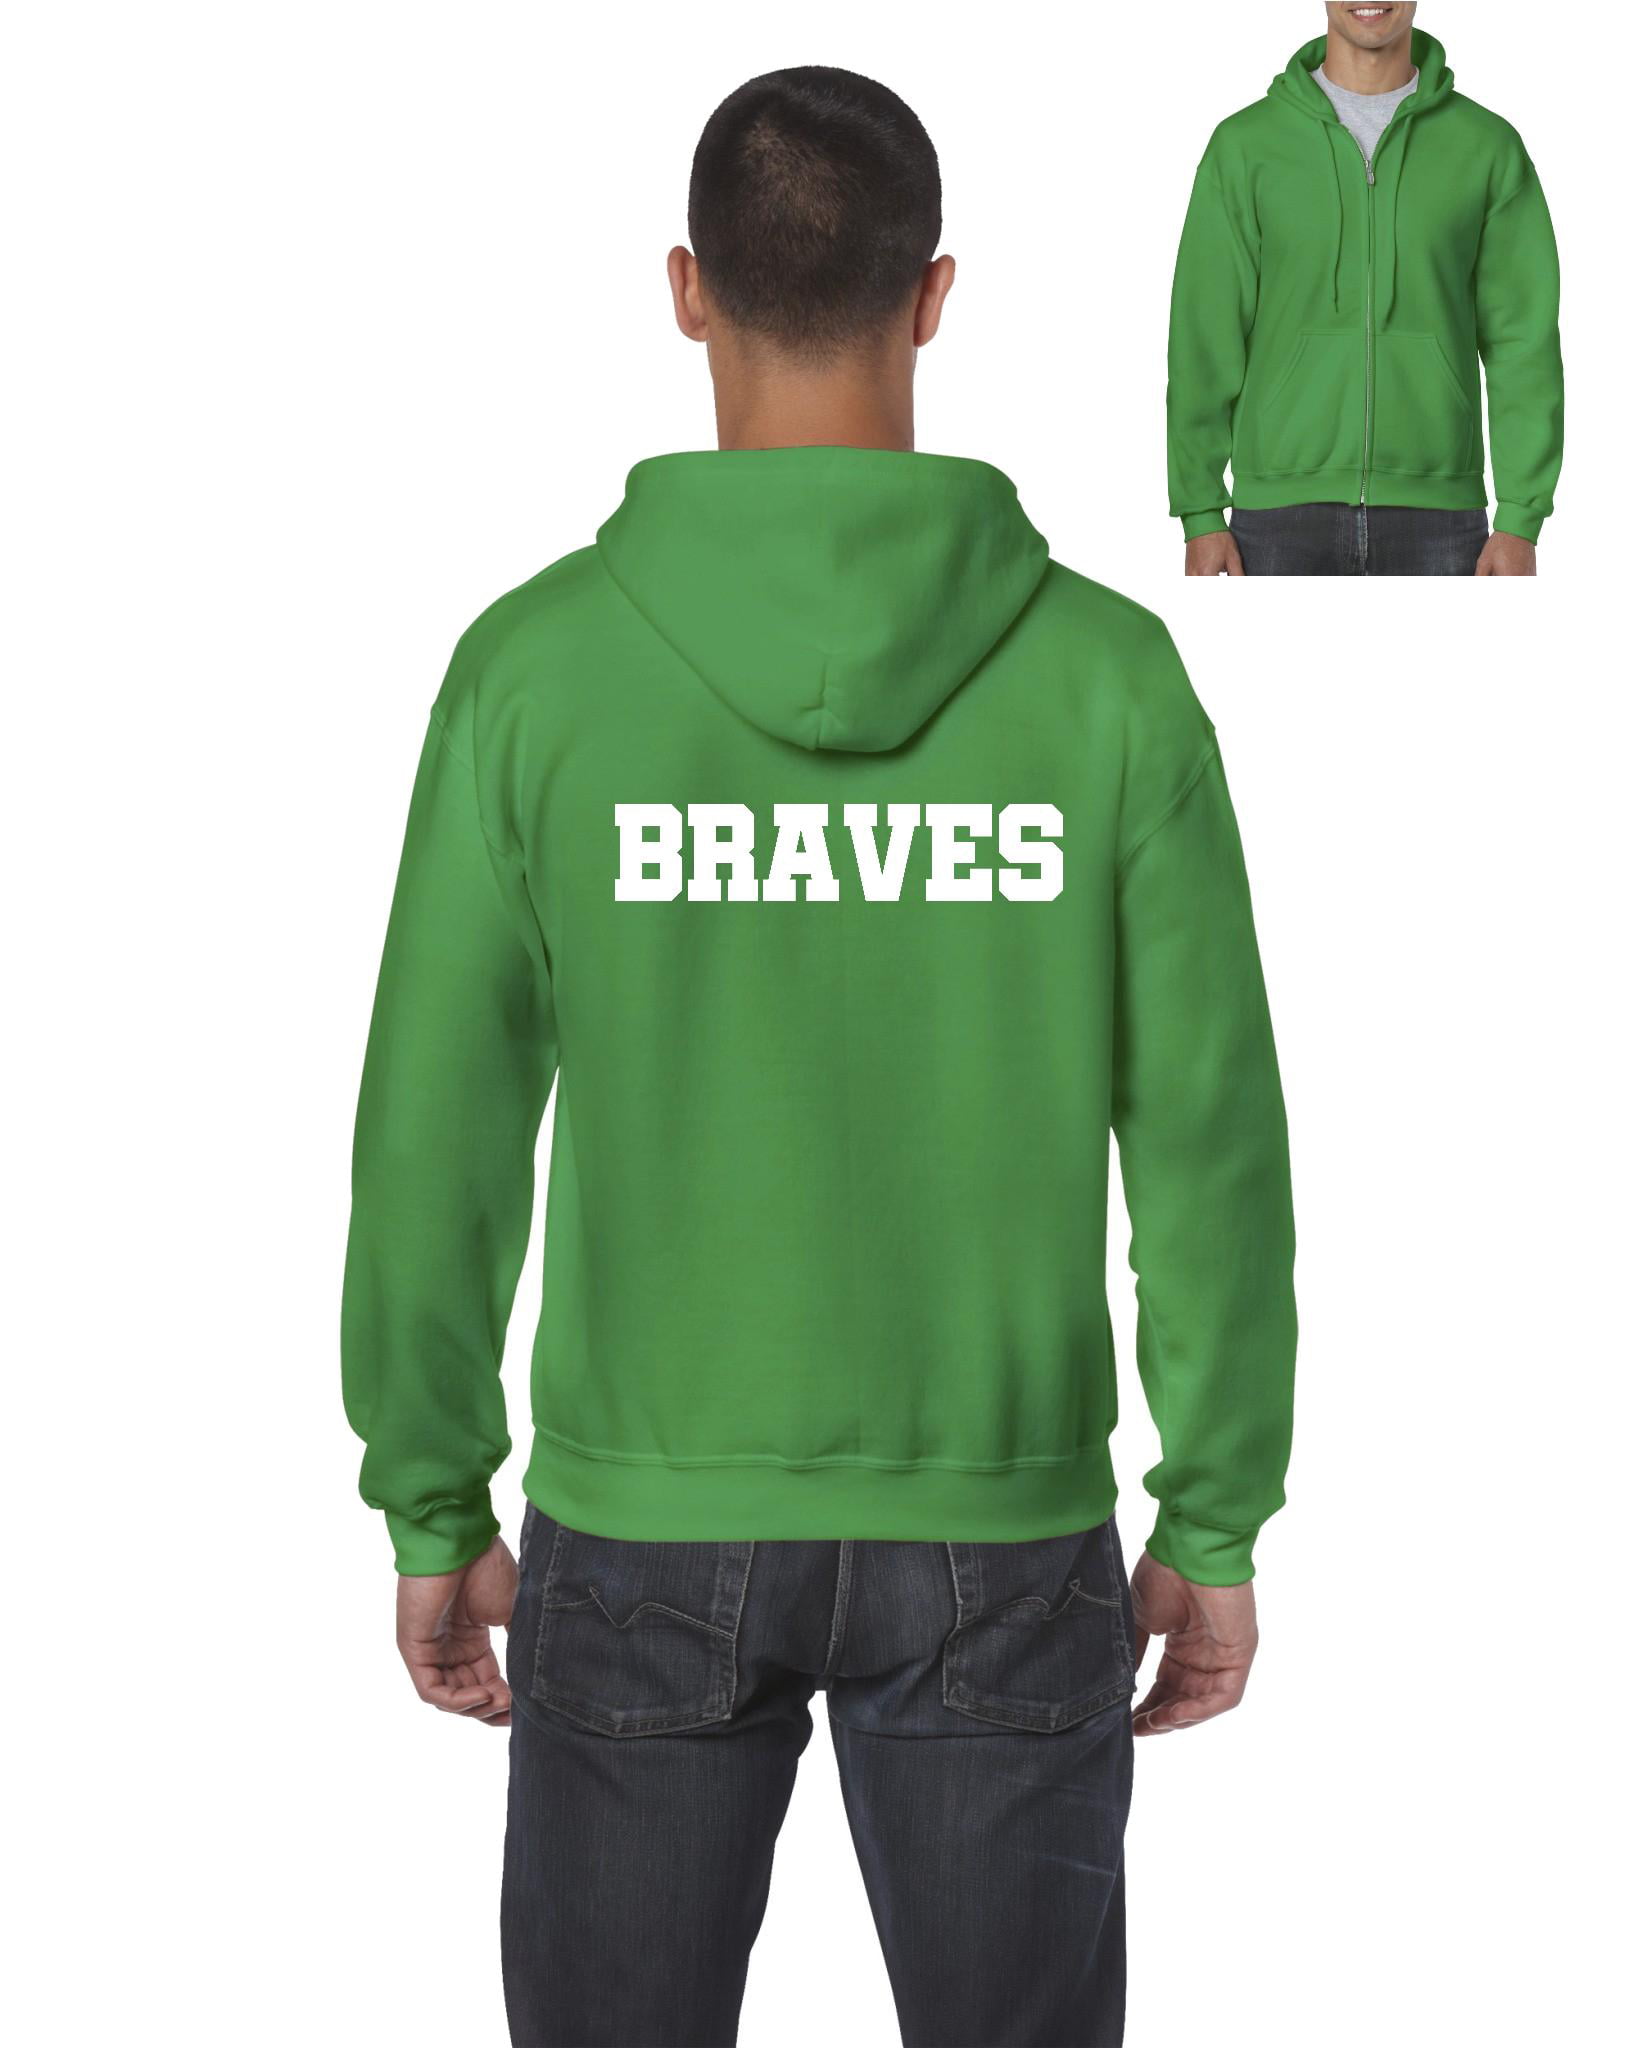 IWPF - Men's Sweatshirt Full-Zip Pullover, up to Men Size 5XL - Braves 